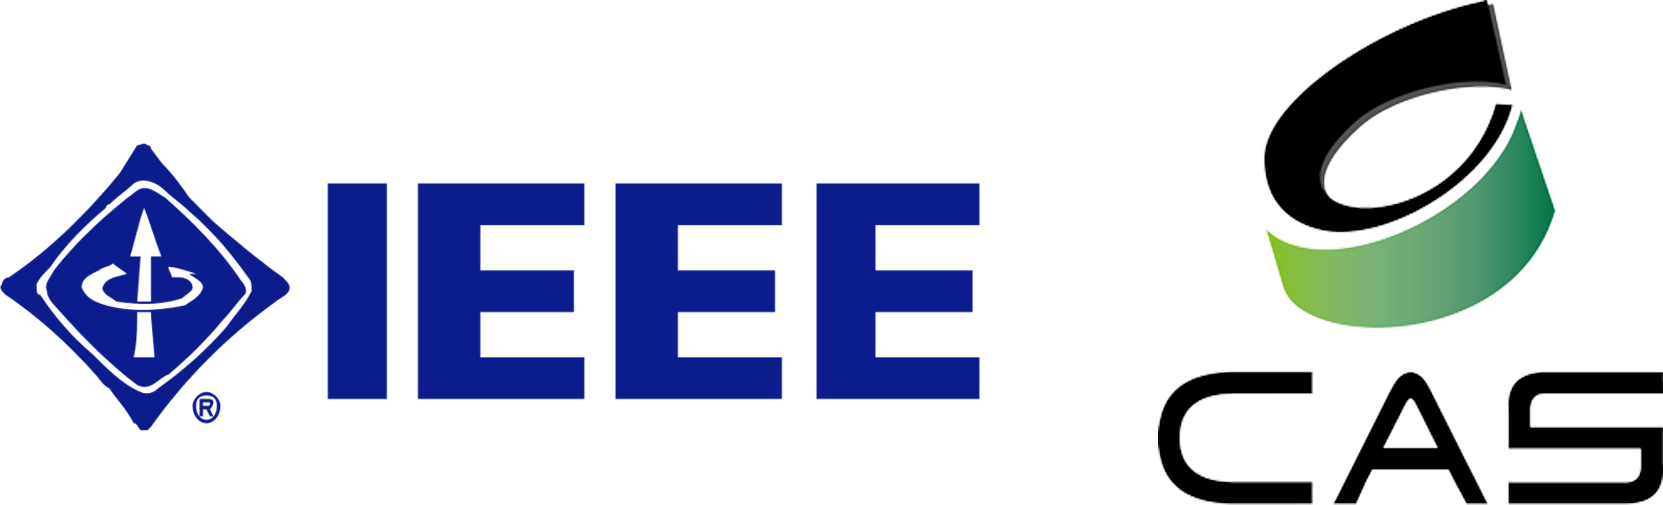 IEEE CAS